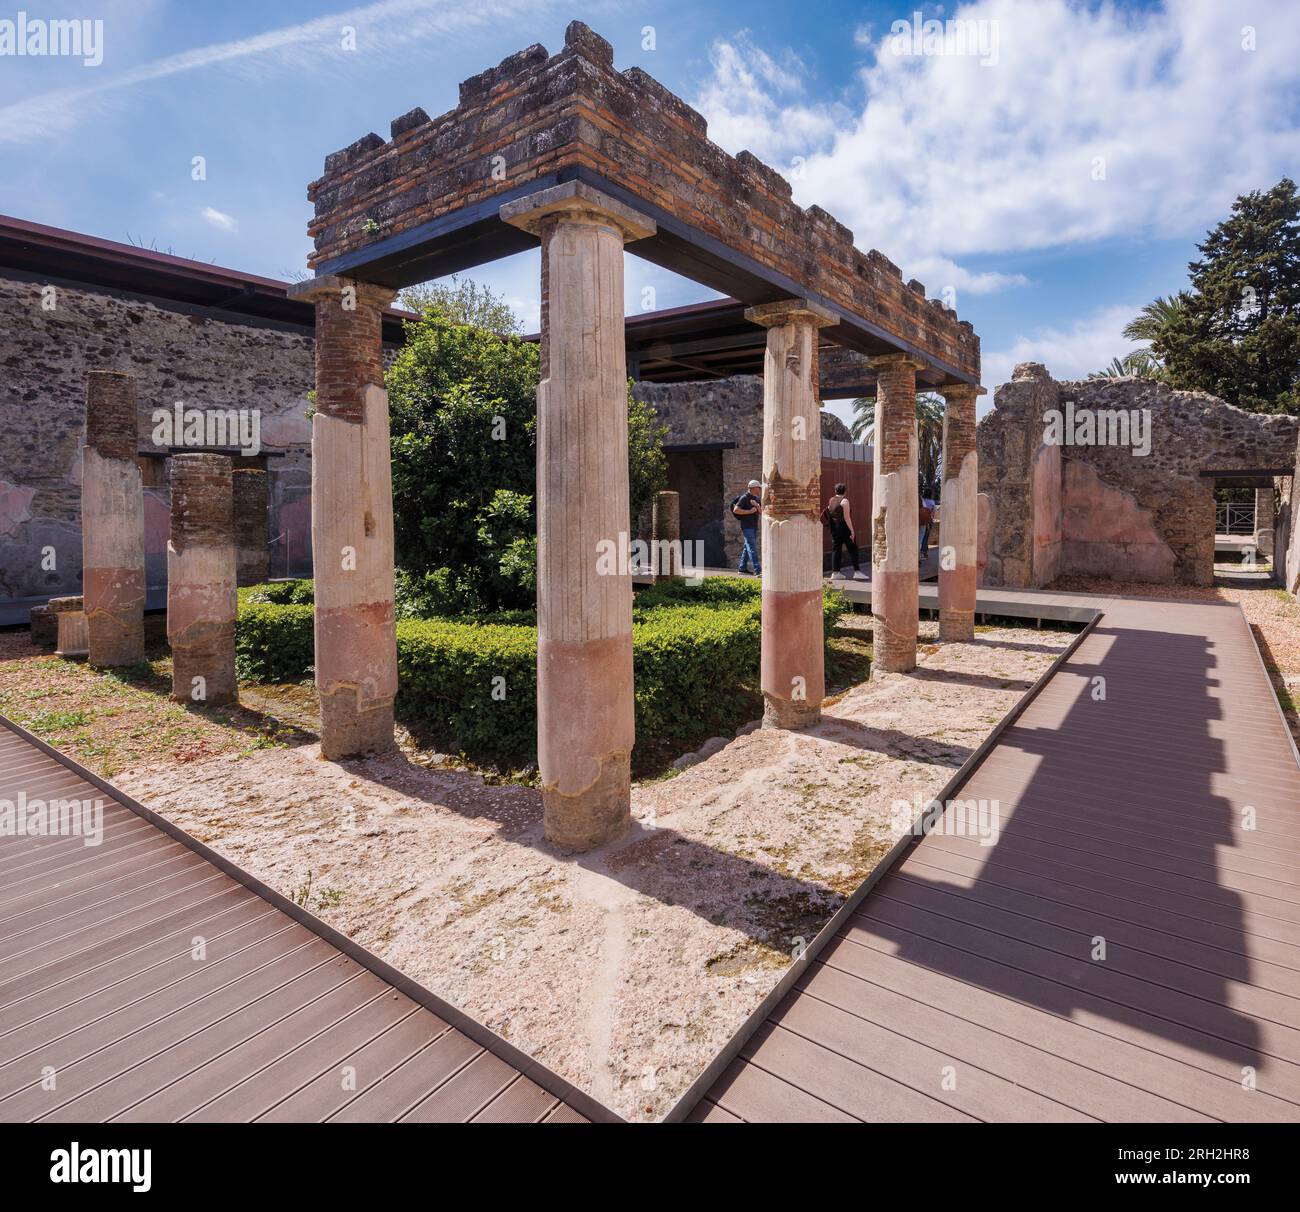 Ausgrabungsstätte Pompeji, Kampanien, Italien. Der Peristyle in der Villa di Diomede, der Villa von Diomedes. Pompeji, Herculaneum und Torre Annunziata A. Stockfoto